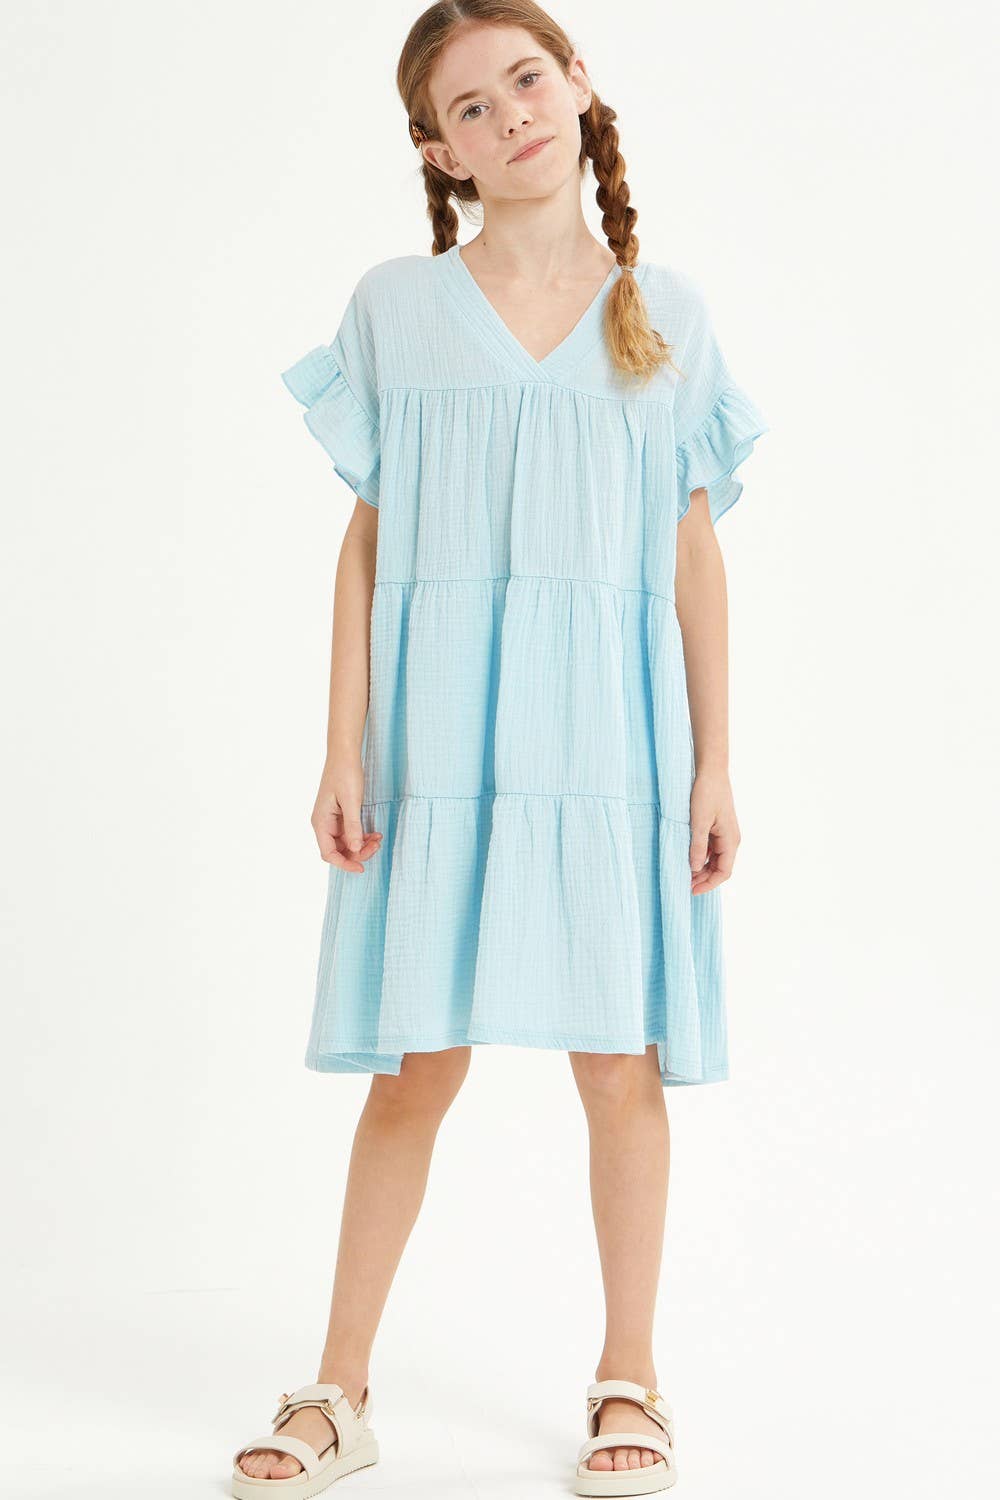 Light Blue Ruffle  Dress